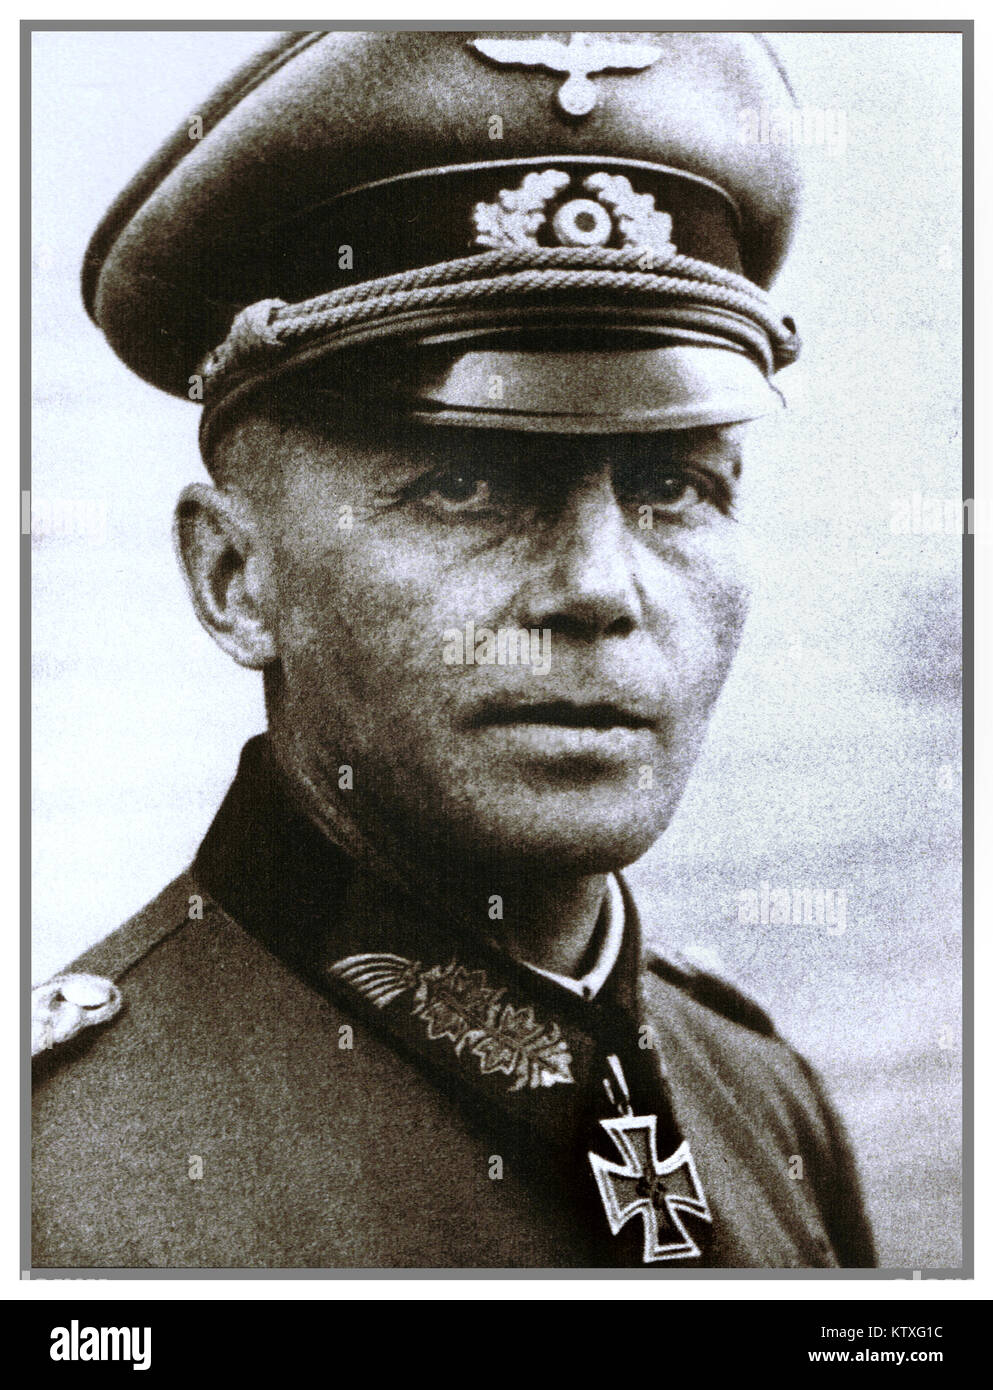 Karl von graffen (6. Juni 1893 - 1. November 1964) war ein deutscher General während des Zweiten Weltkrieges, die übergreifend und Korps zu Kommandos statt. Er war ein Empfänger des Kreuzes des Ritter des Eisernen Kreuzes von Nazi-deutschland. Graffen wurde gefangen im Mai 1945 von der amerikanischen US 85 Infanterie Division in der Nähe von Belluno, Italien und wurde im März 1948 veröffentlicht. Stockfoto